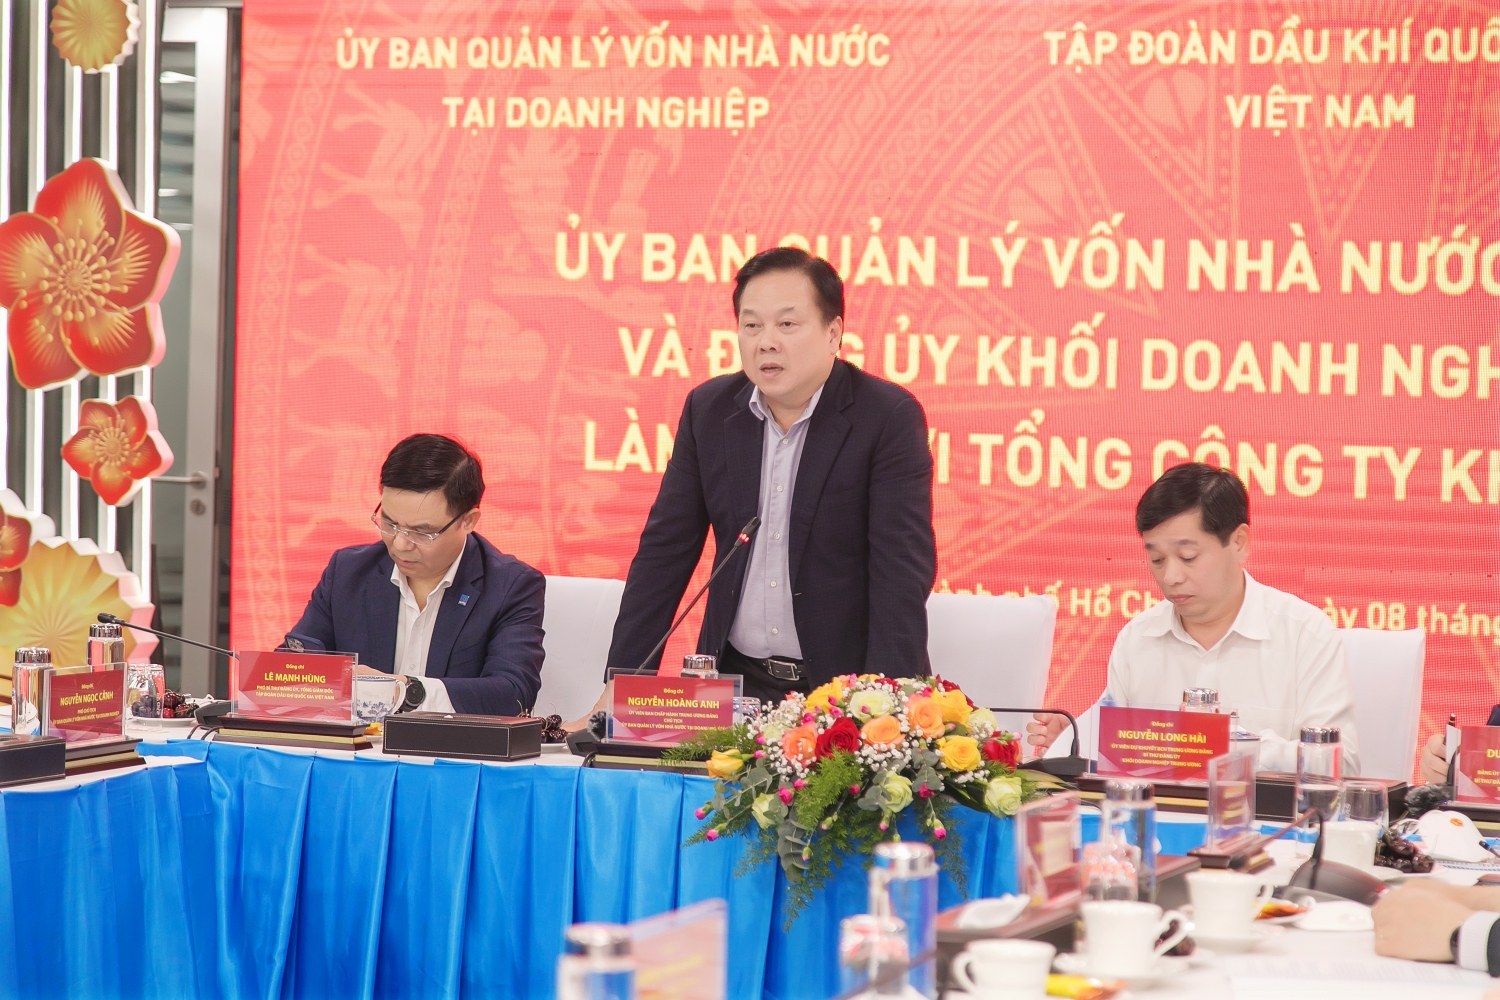 Phát biểu của đồng chí Nguyễn Hoàng Anh - Ủy viên Ban Chấp hành Trung ương Đảng, Chủ tịch Ủy ban Quản lý vốn Nhà nước tại doanh nghiệp